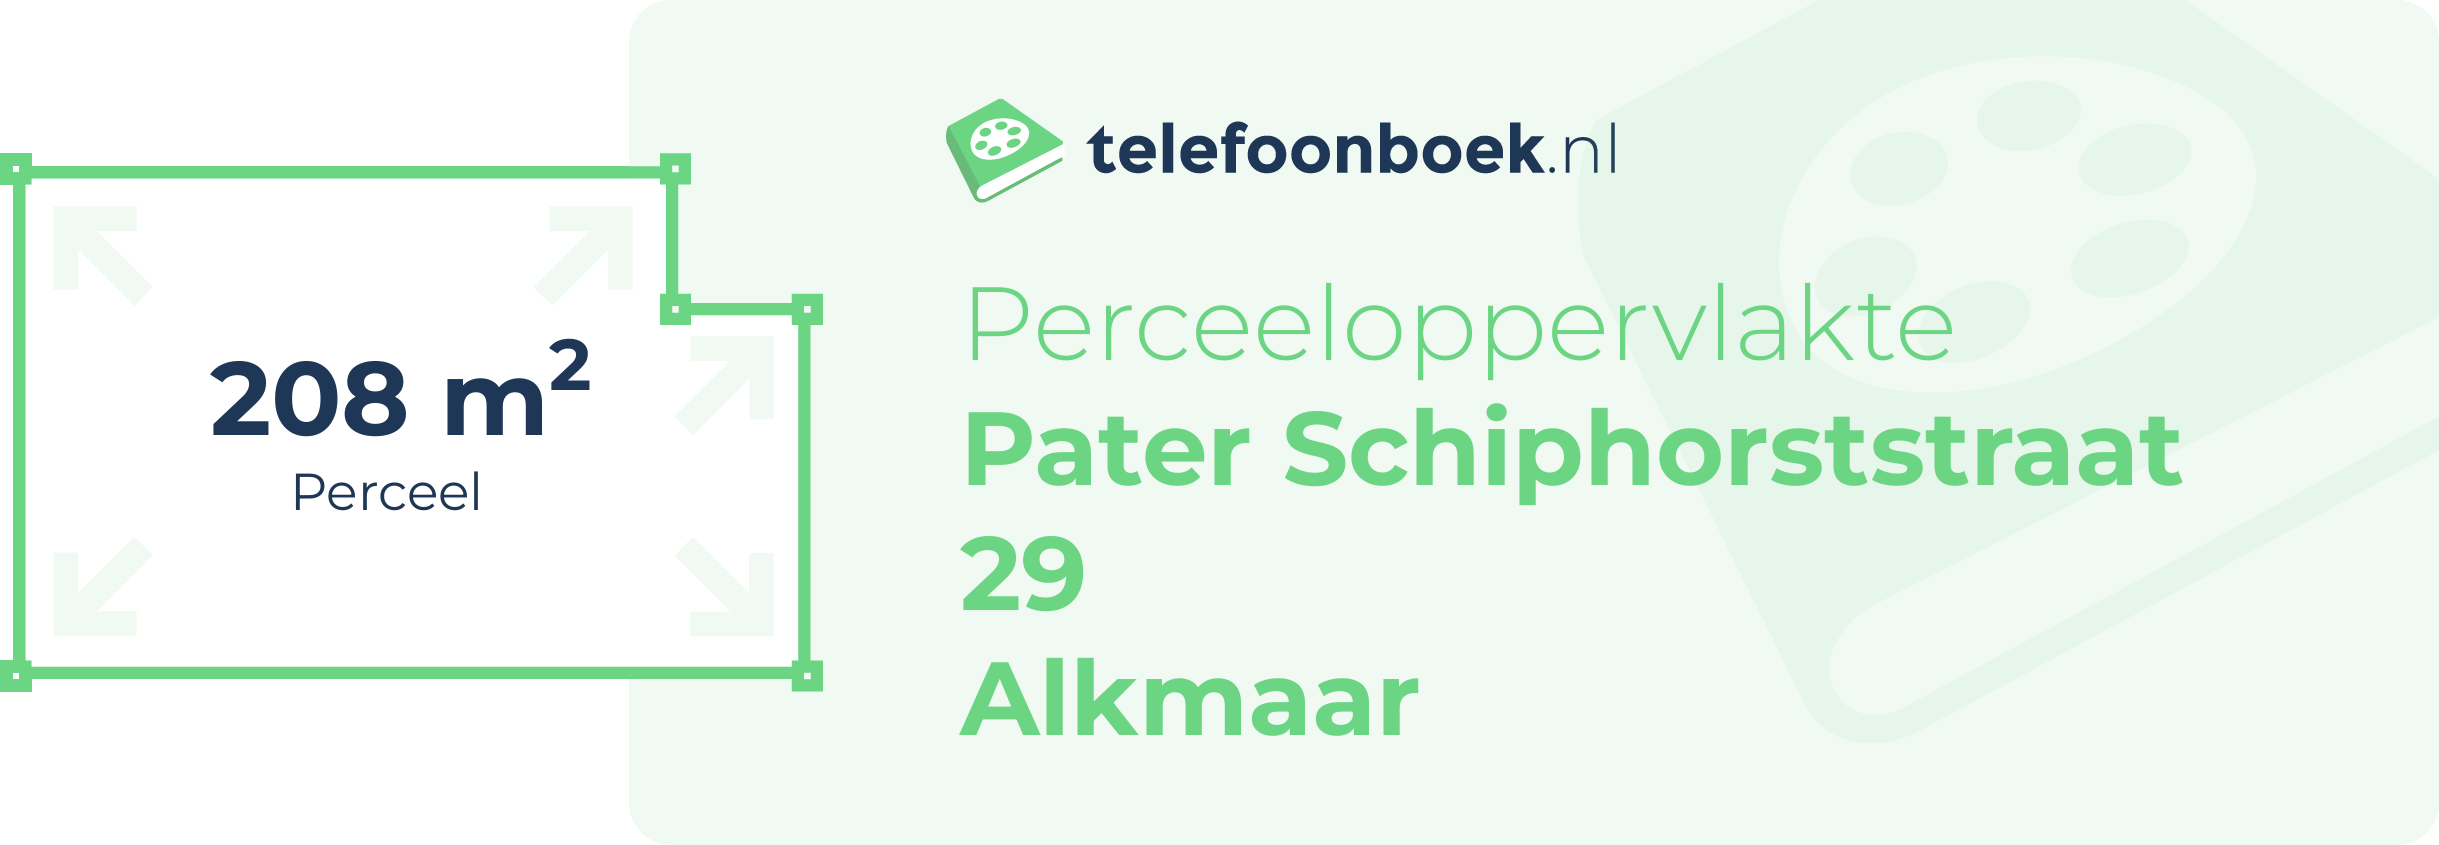 Perceeloppervlakte Pater Schiphorststraat 29 Alkmaar